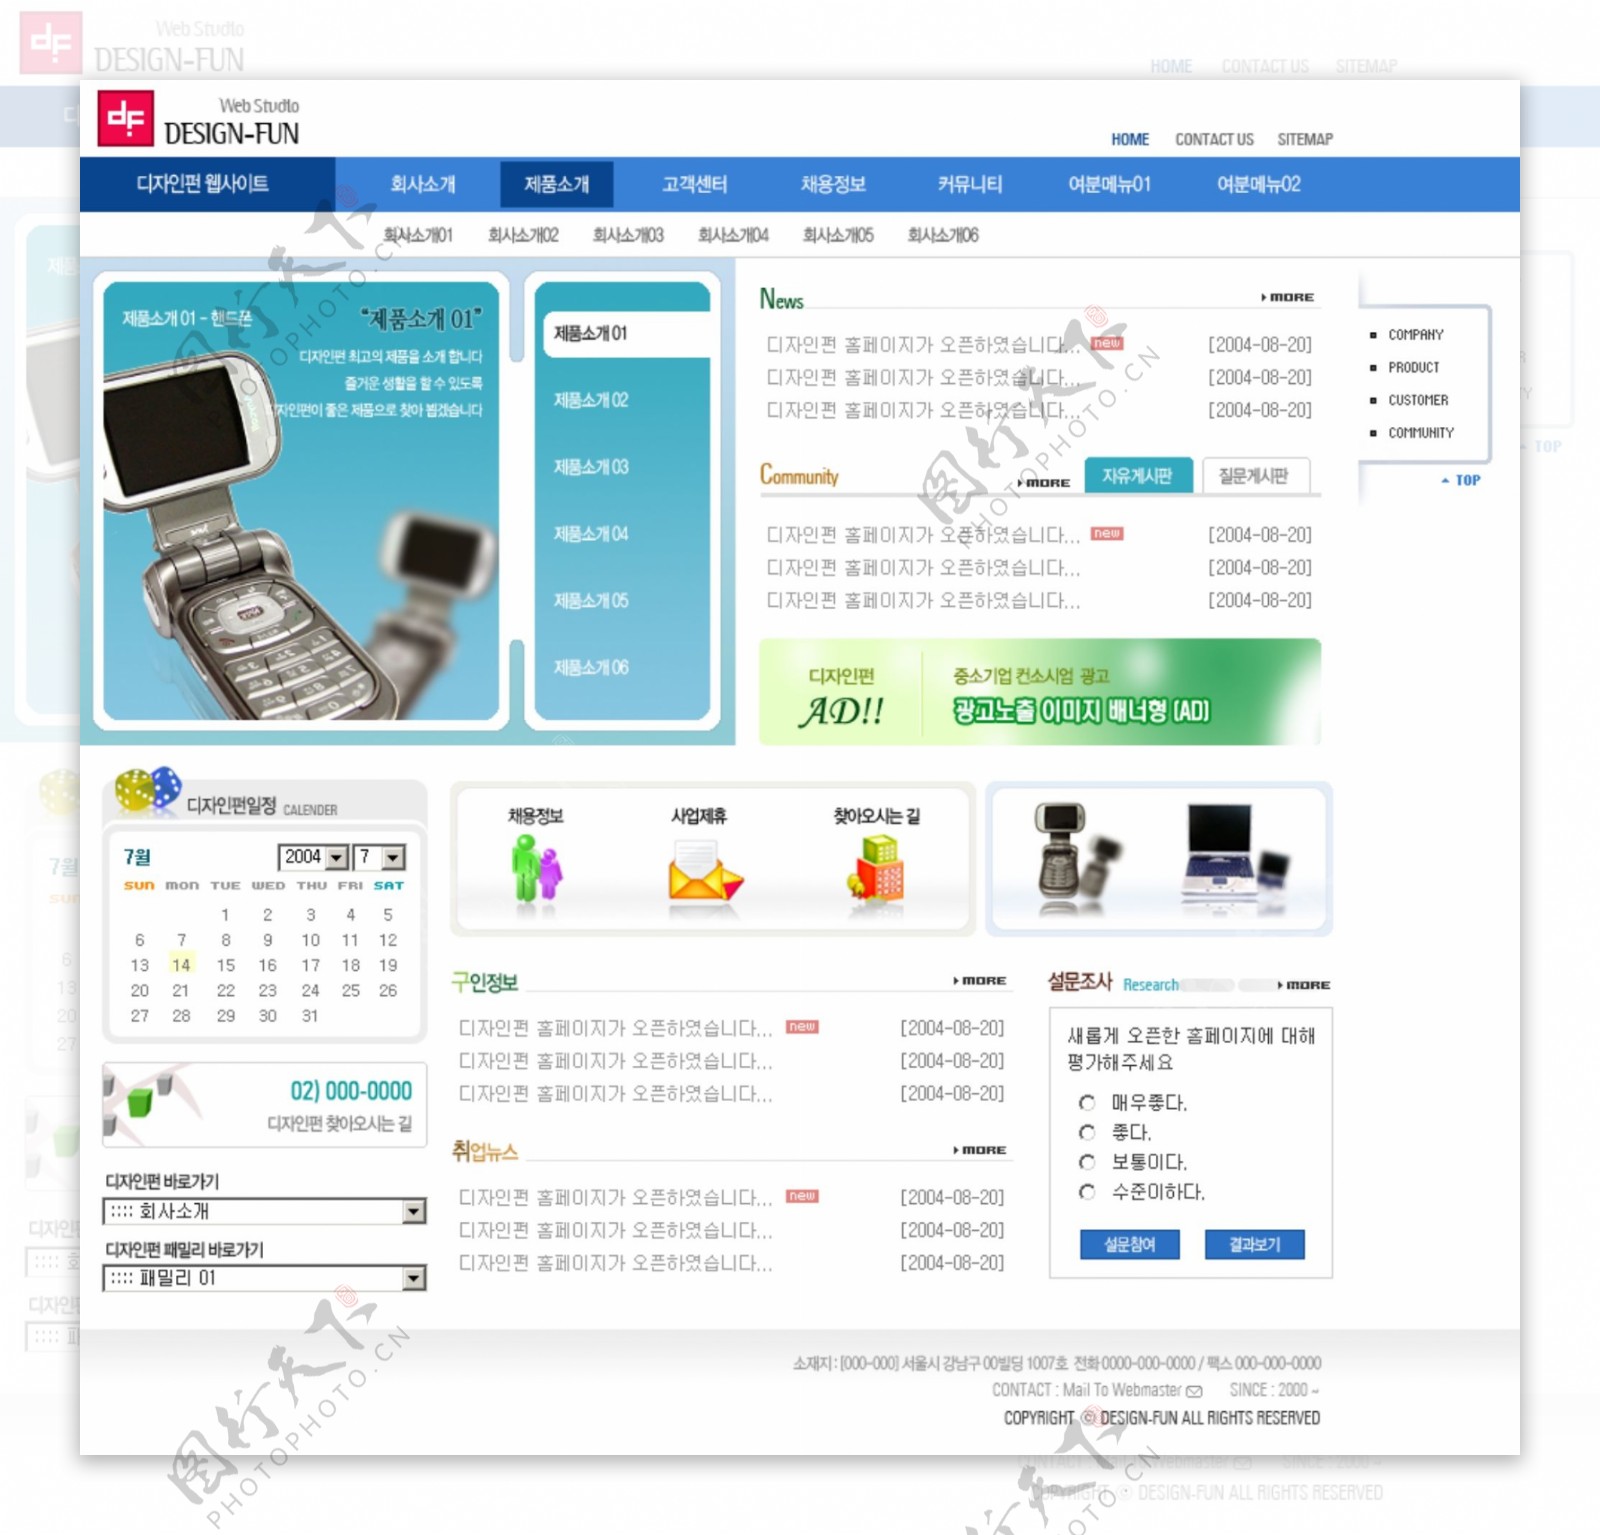 手机专卖网店韩国psdfla网页模板图片